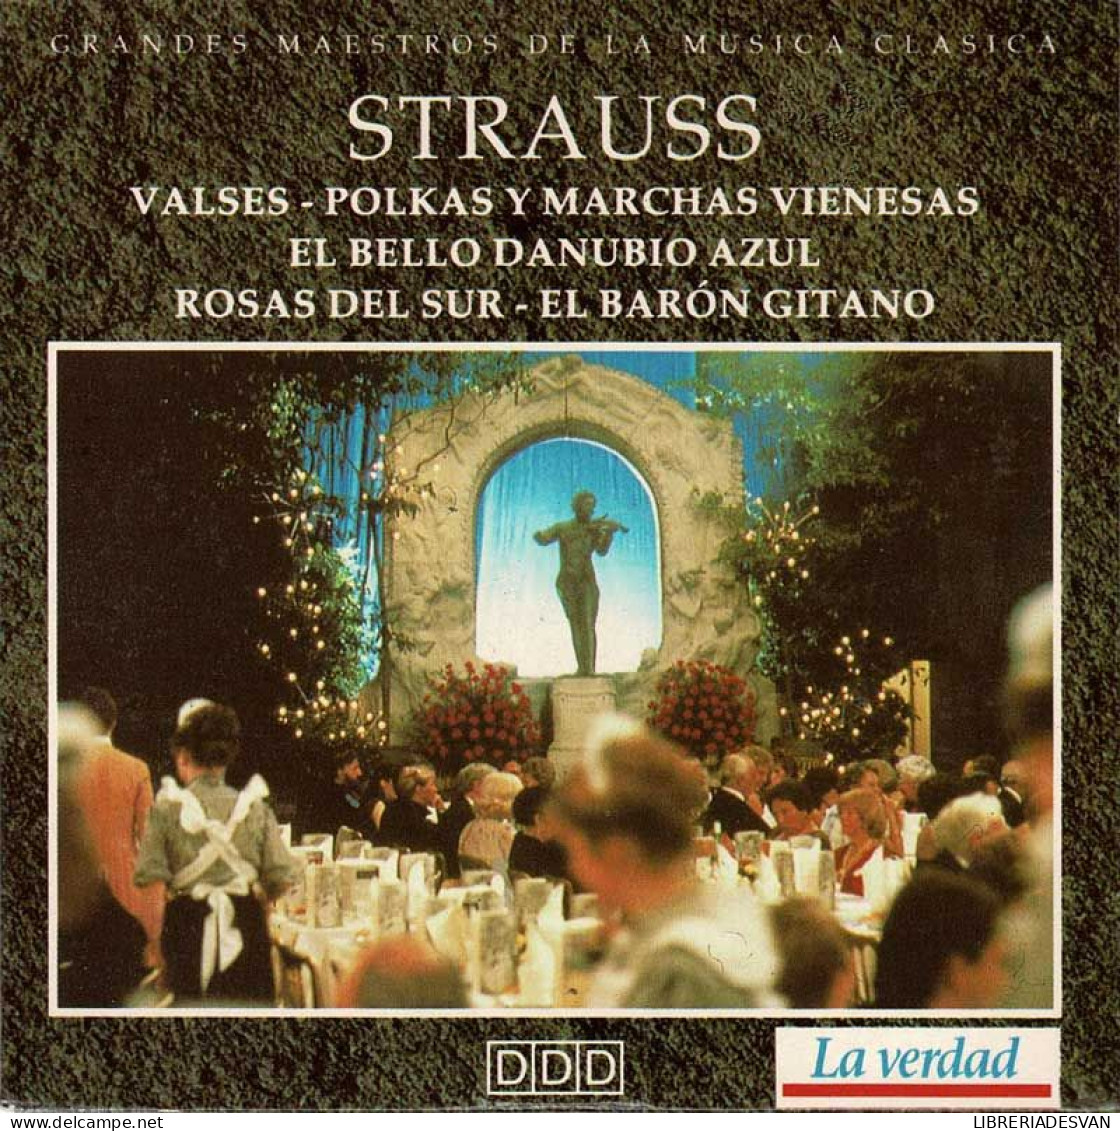 Strauss - Valses. Polkas Y Marchas Vienesas. El Bello Danubio Azul. Rosas Del Sur. El Barón Gitano. CD - Clásica